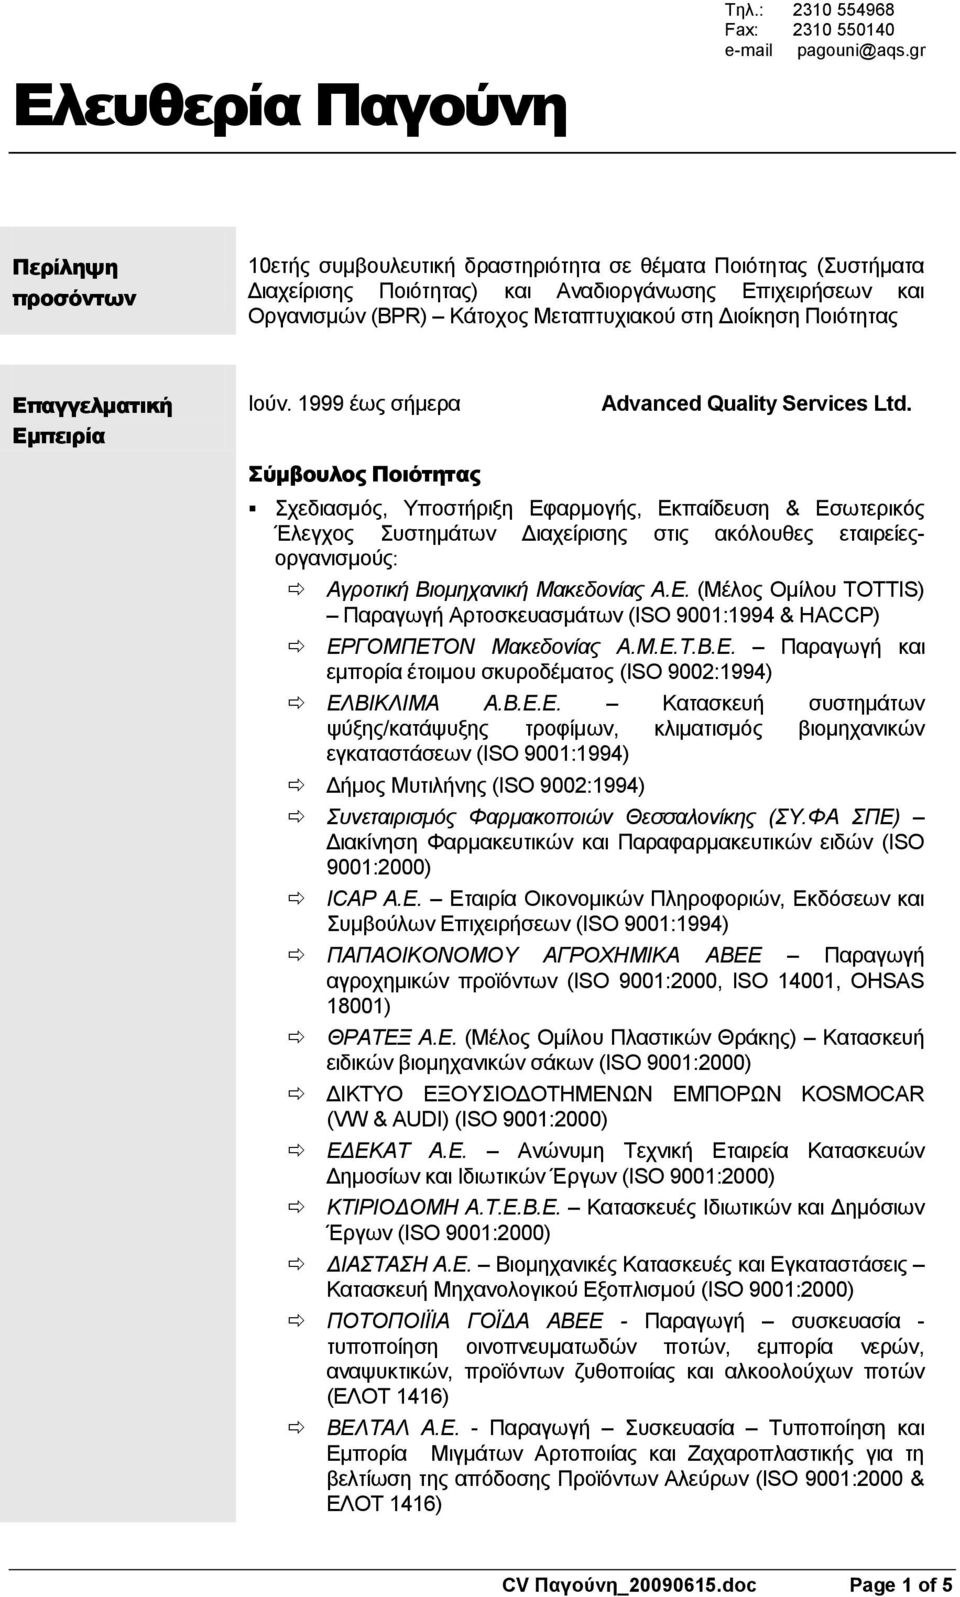 Πνηόηεηαο Επαγγελματική Εμπειρία Ηνύλ. 1999 έσο ζήκεξα Σύμβουλος Ποιότητας Advanced Quality Services Ltd.